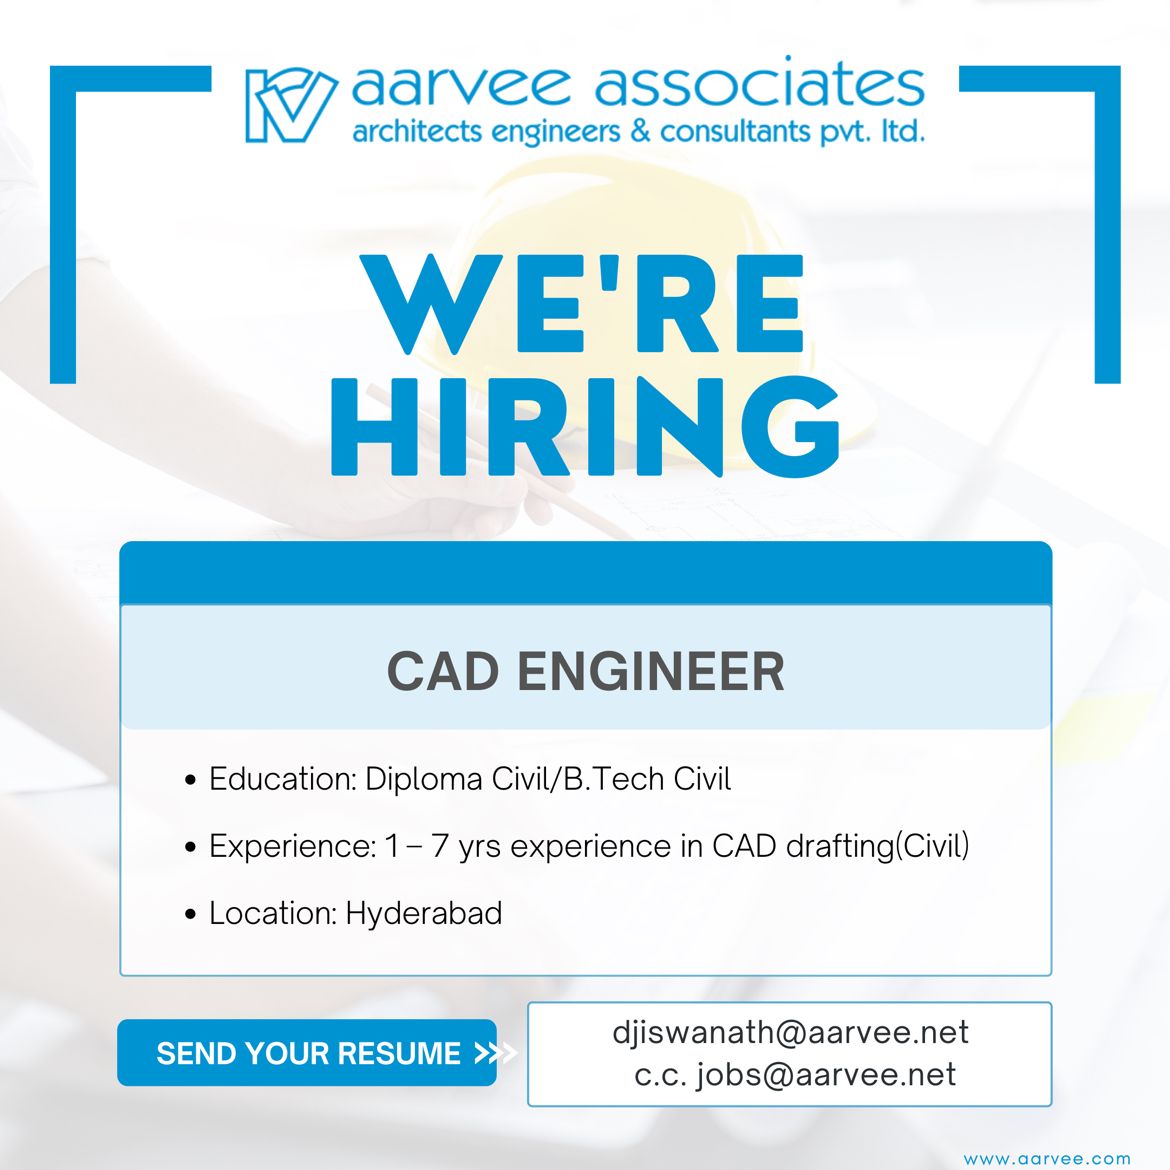 aarvee-associates-linkedin-hiring-cadengineer-civilengineeringjobs-43